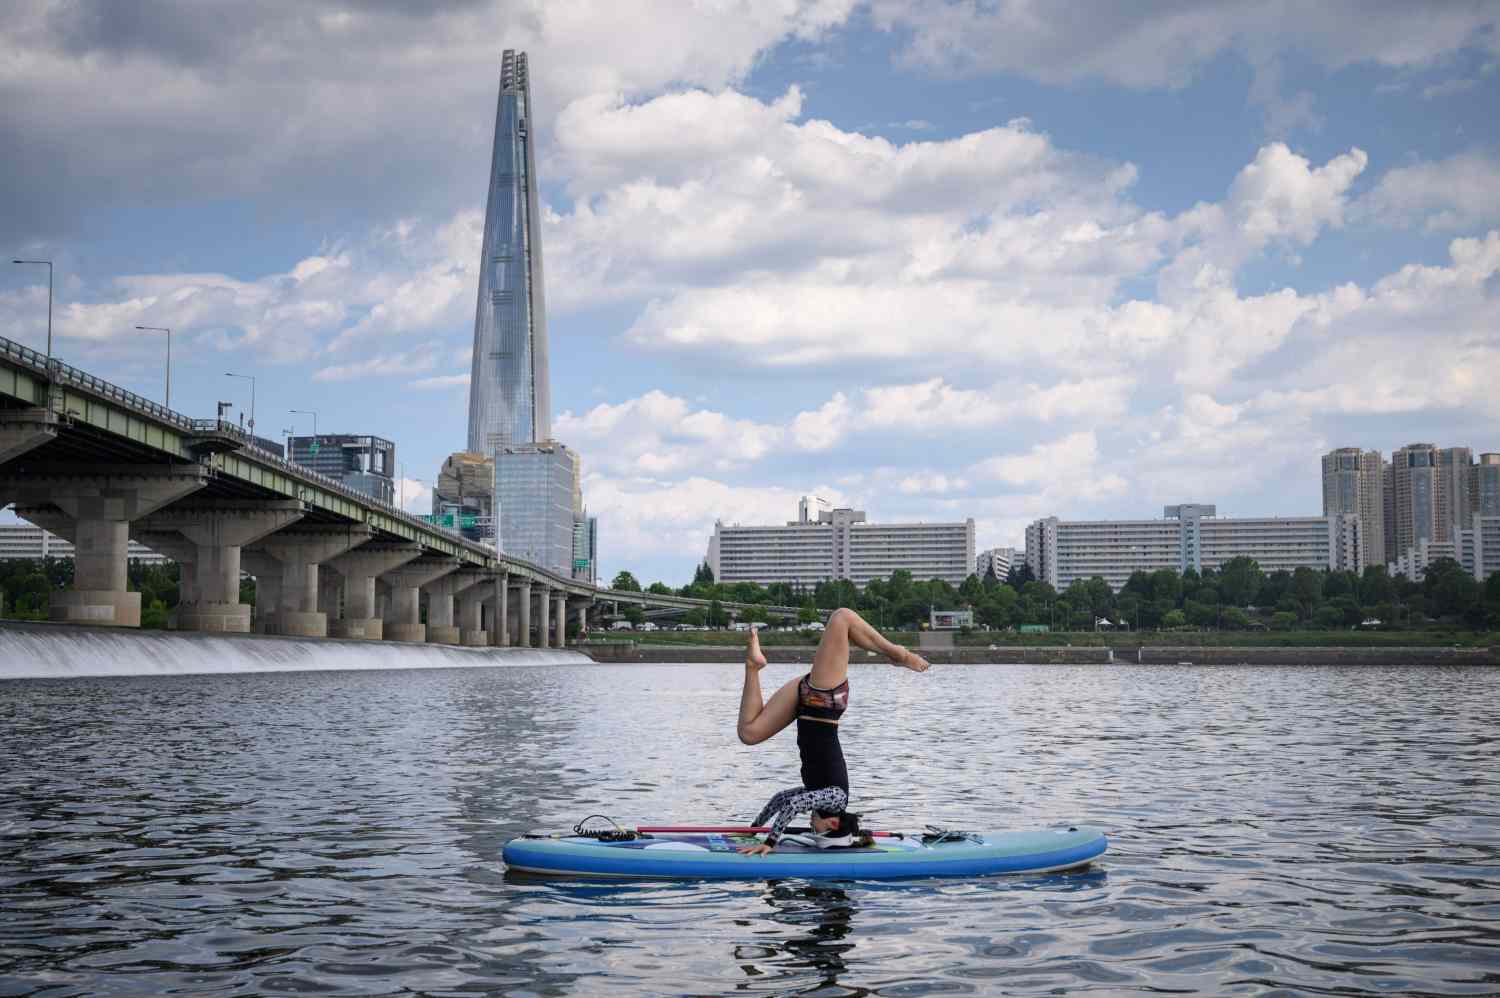 Una mujer realizando una postura de yoga en una tabla de paddle frente a la Lotte Tower, en el río Han, Seúl.